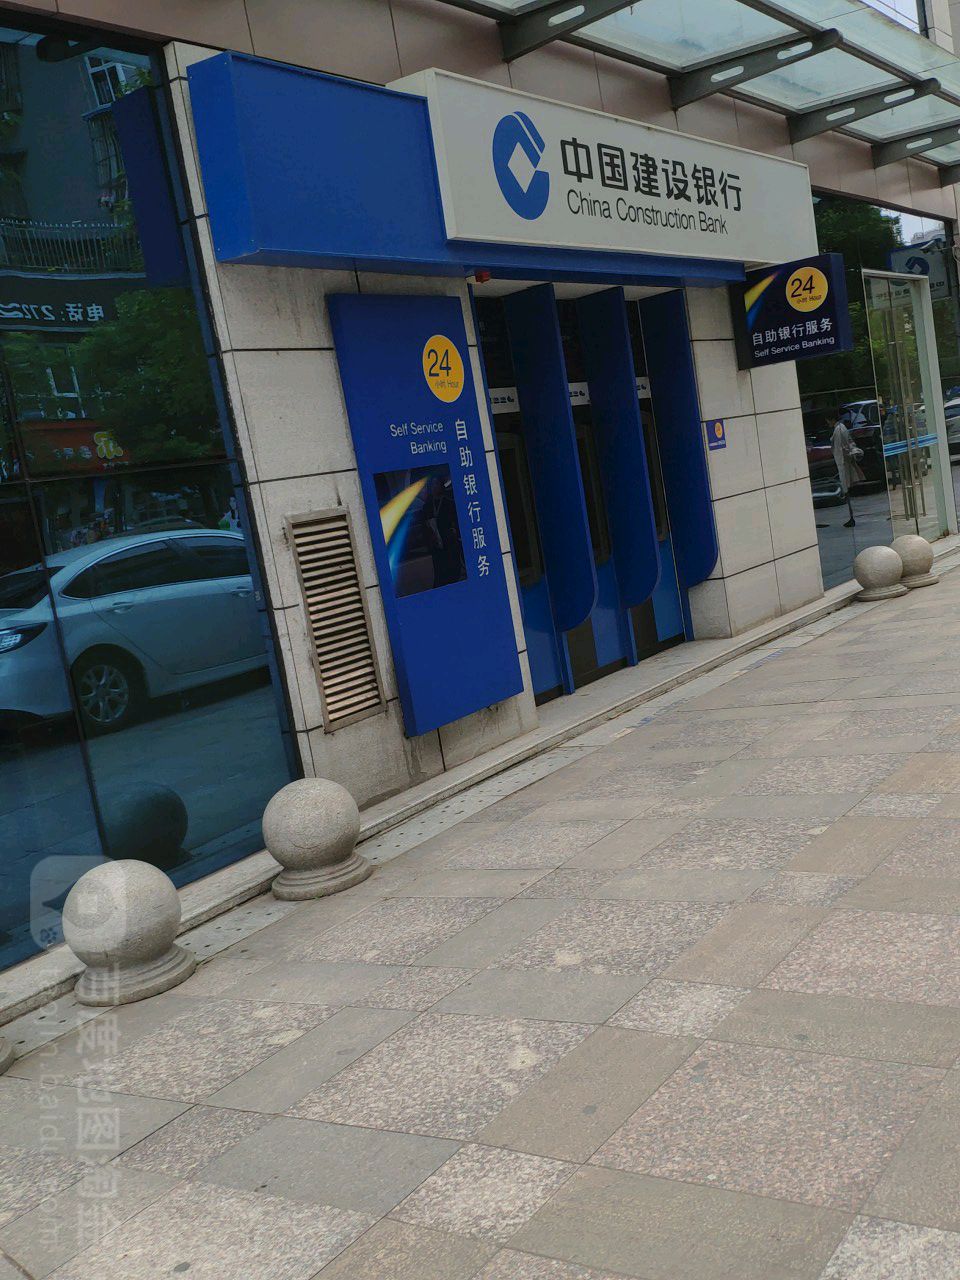 中國建設銀行24小時自助銀行(簡陽支行)